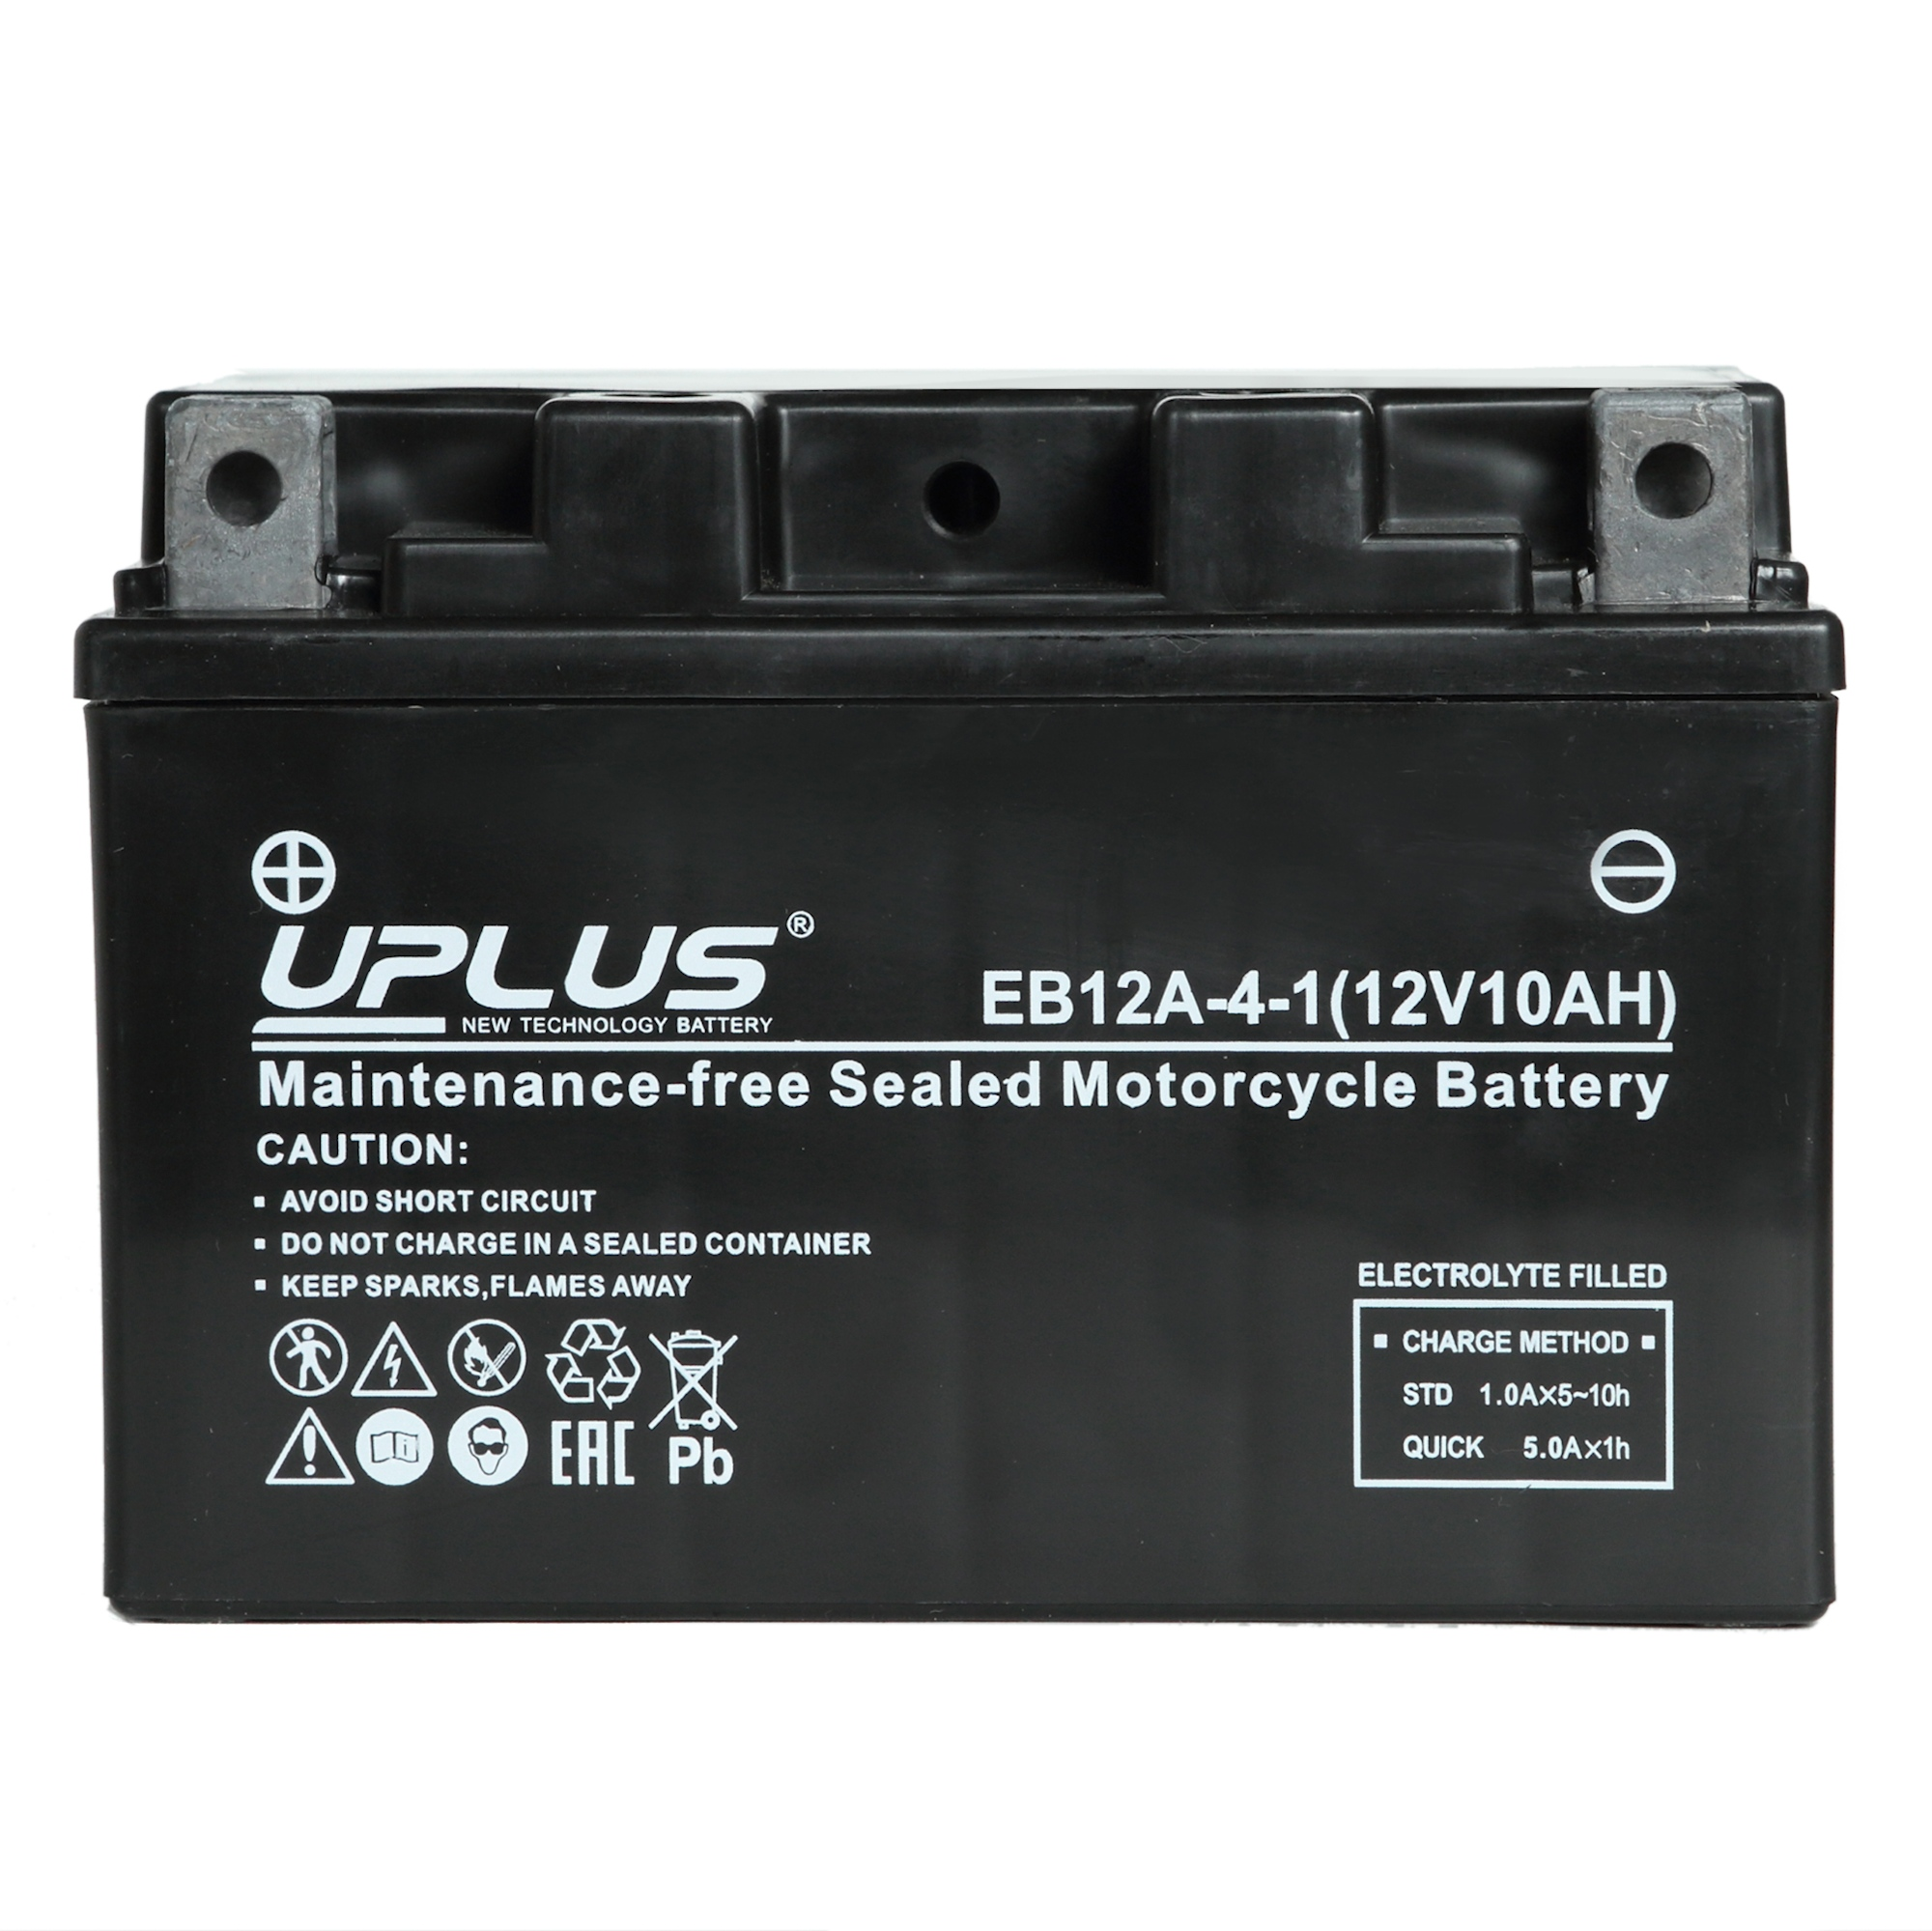 Мотоциклетная аккумуляторная батарея UPLUS High Performance  EB12A-4-1, 10 Ач, 1/0